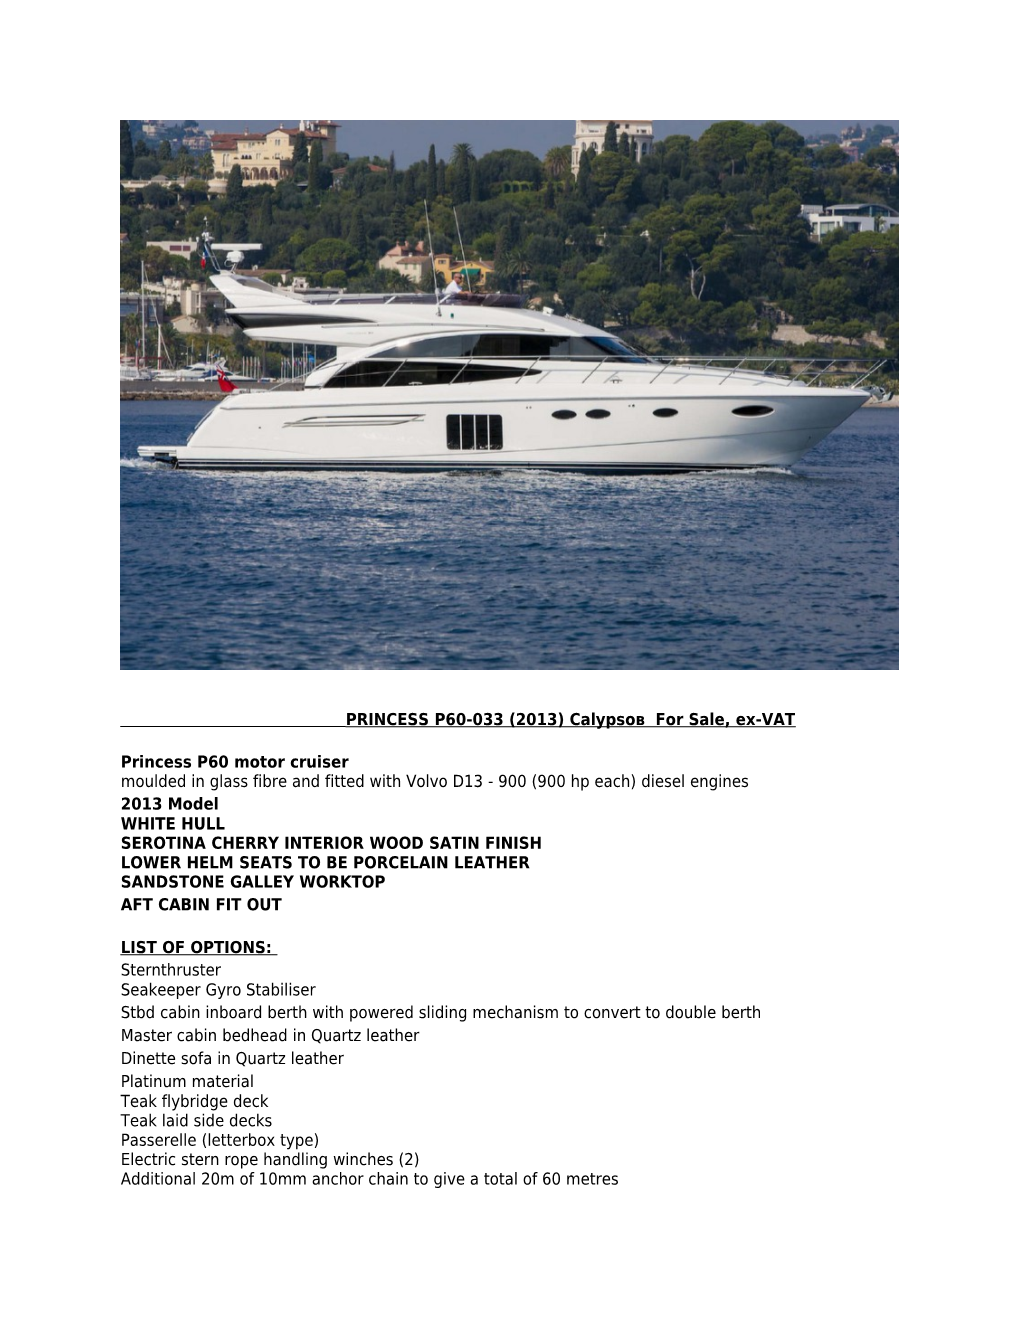 PRINCESS P60-033 (2013) Calypsoв for Sale, Ex-VAT Princess P60 Motor Cruiser